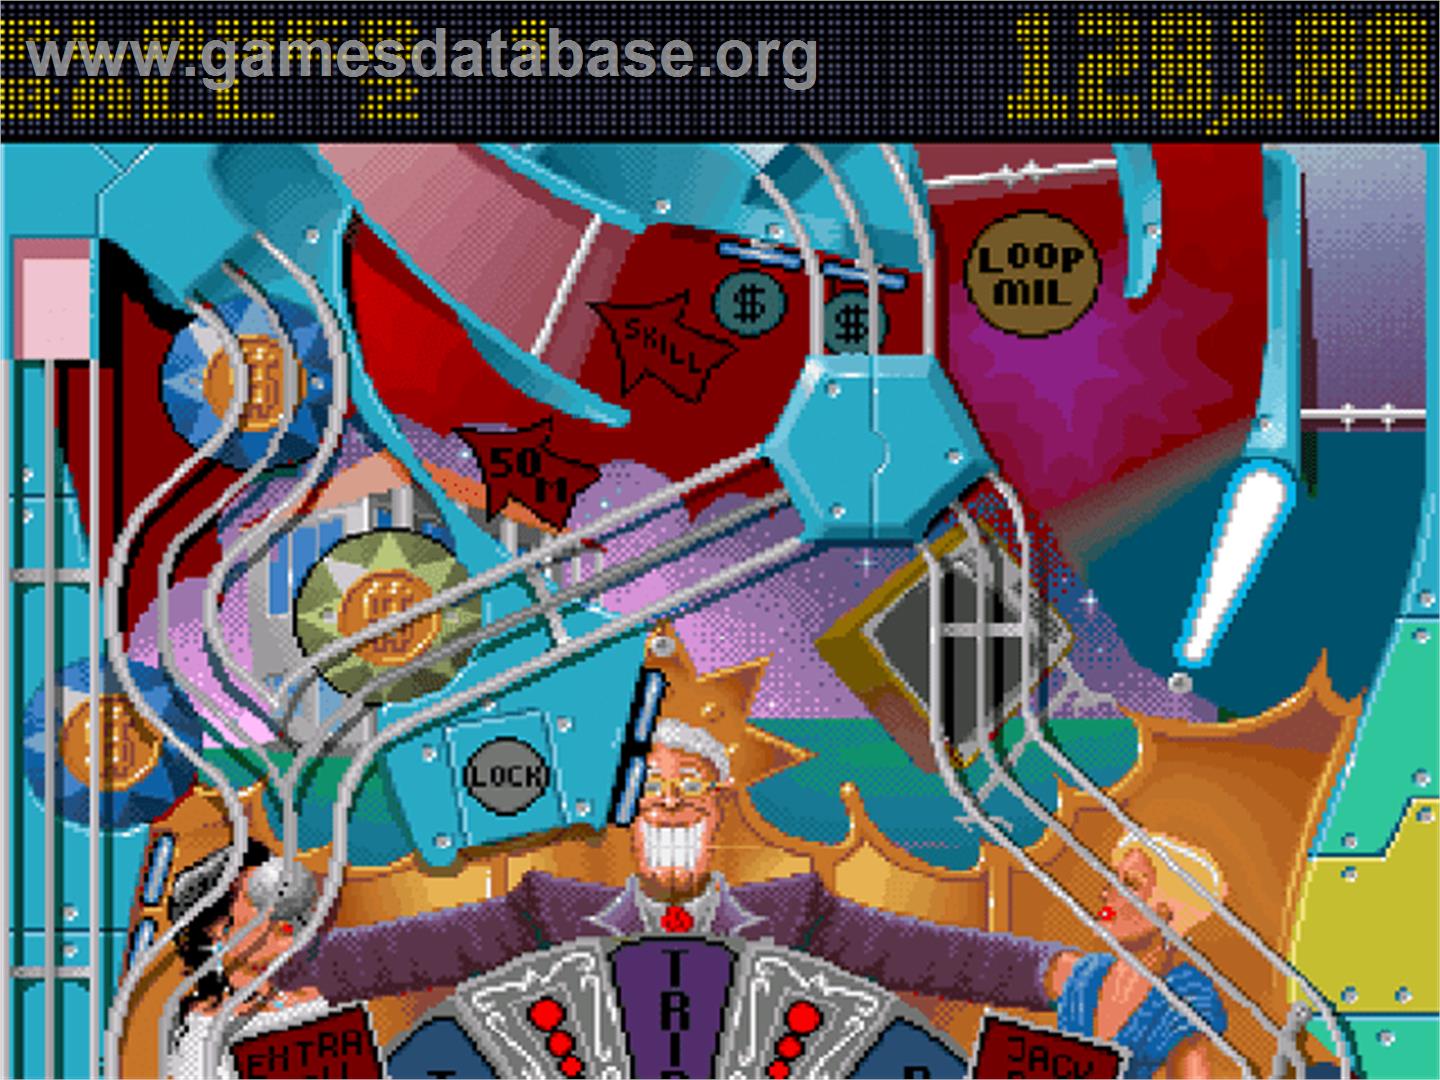 Pinball Fantasies - Commodore Amiga CD32 - Artwork - In Game